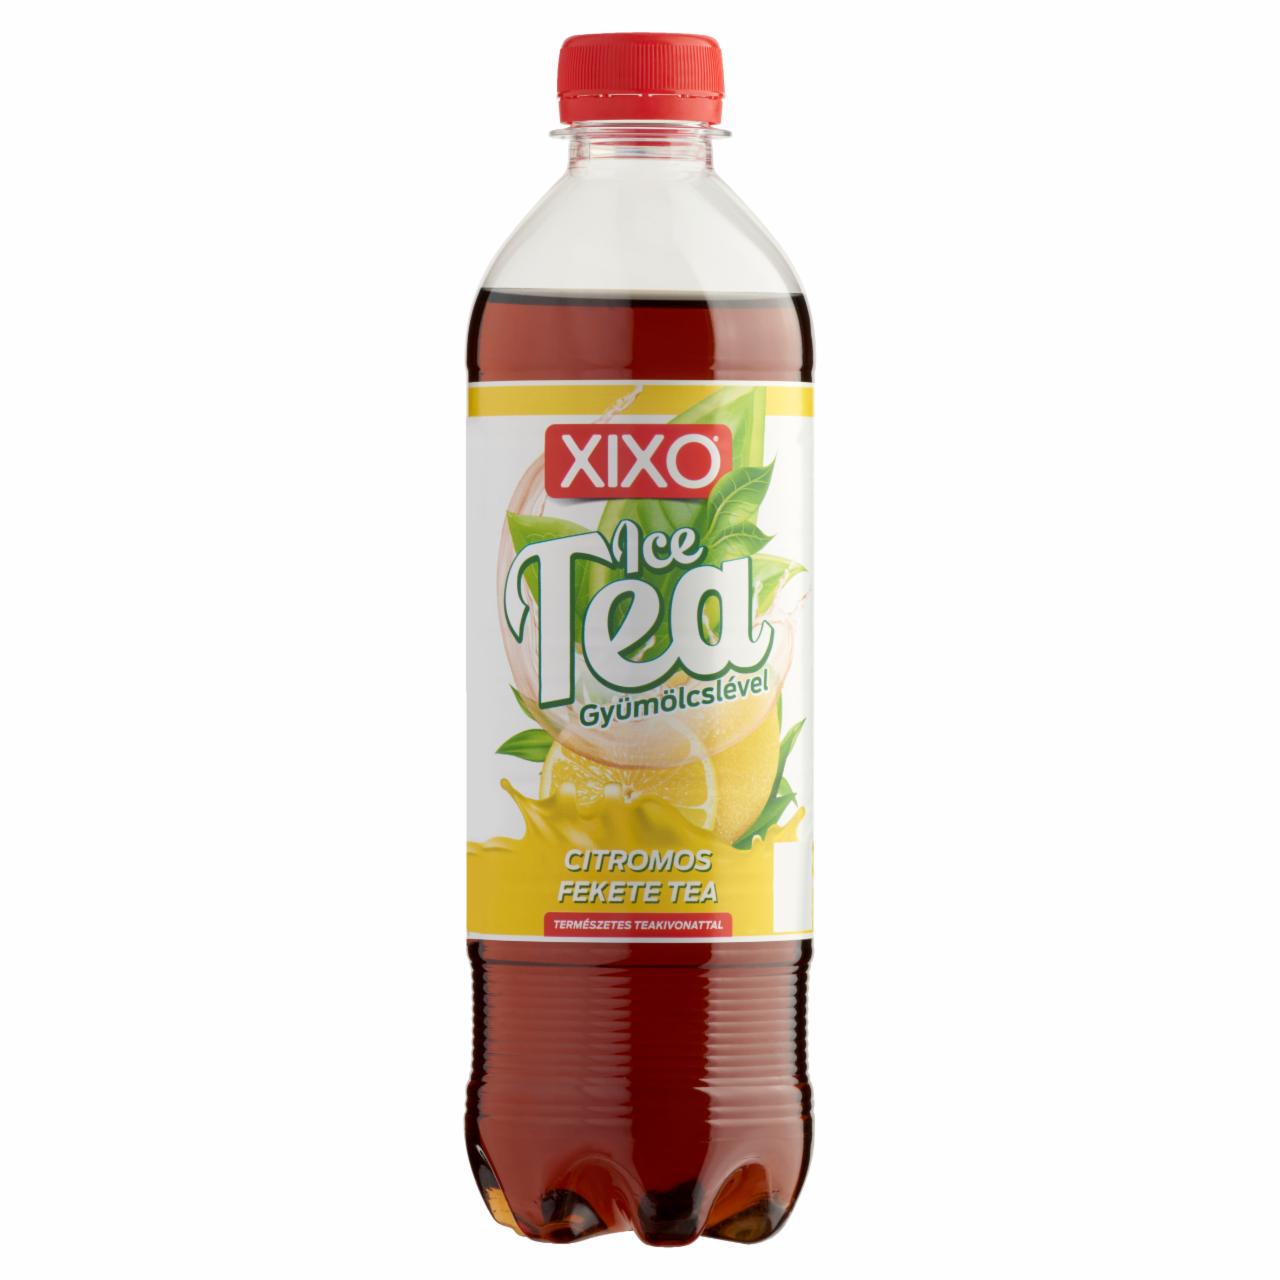 Képek - XIXO Ice Tea citromos fekete tea 0,5 l